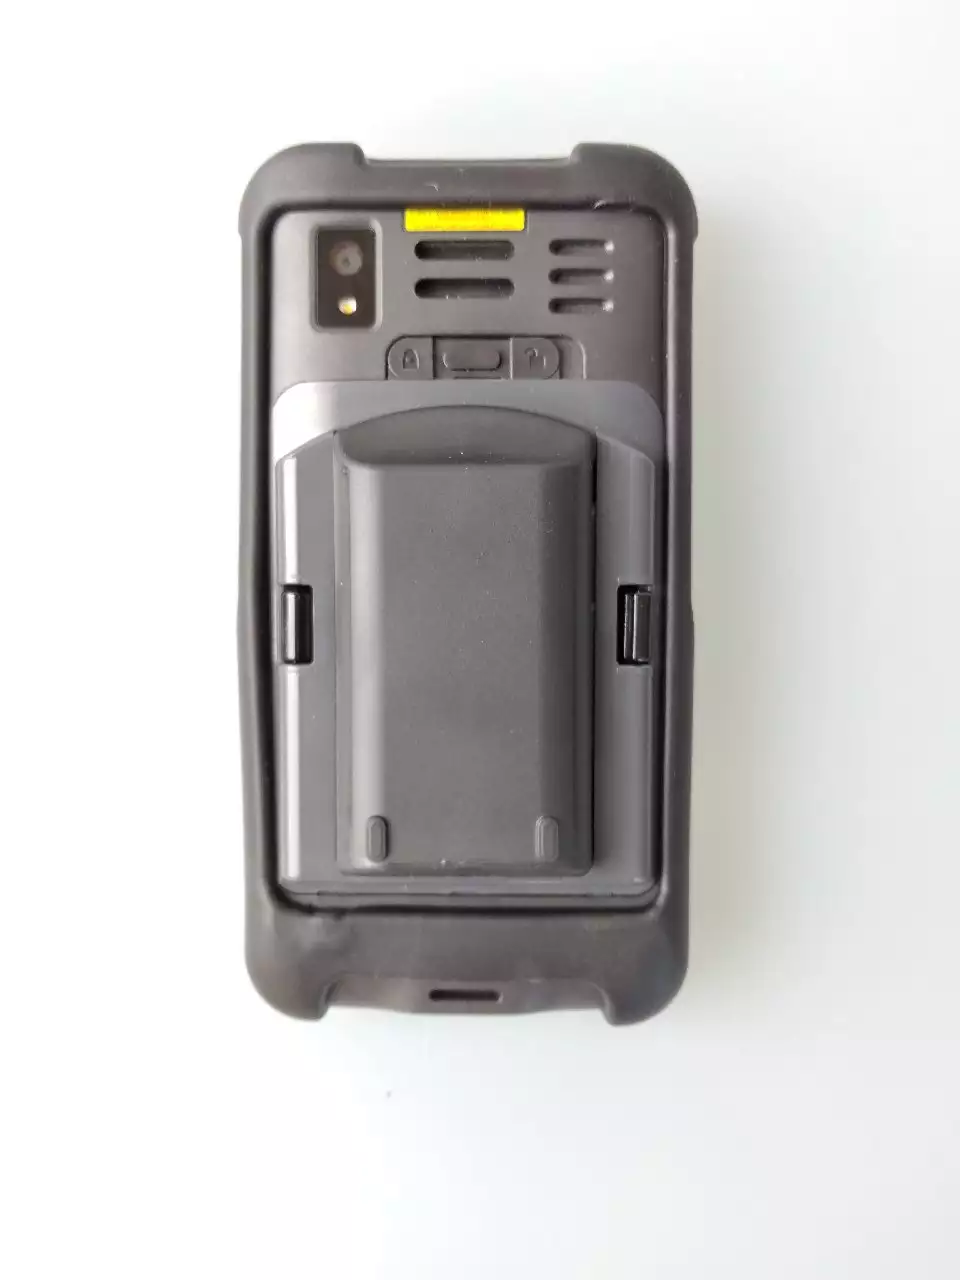 Изображения Аккумулятор батарея для Honeywell eda51 увеличенной емкости